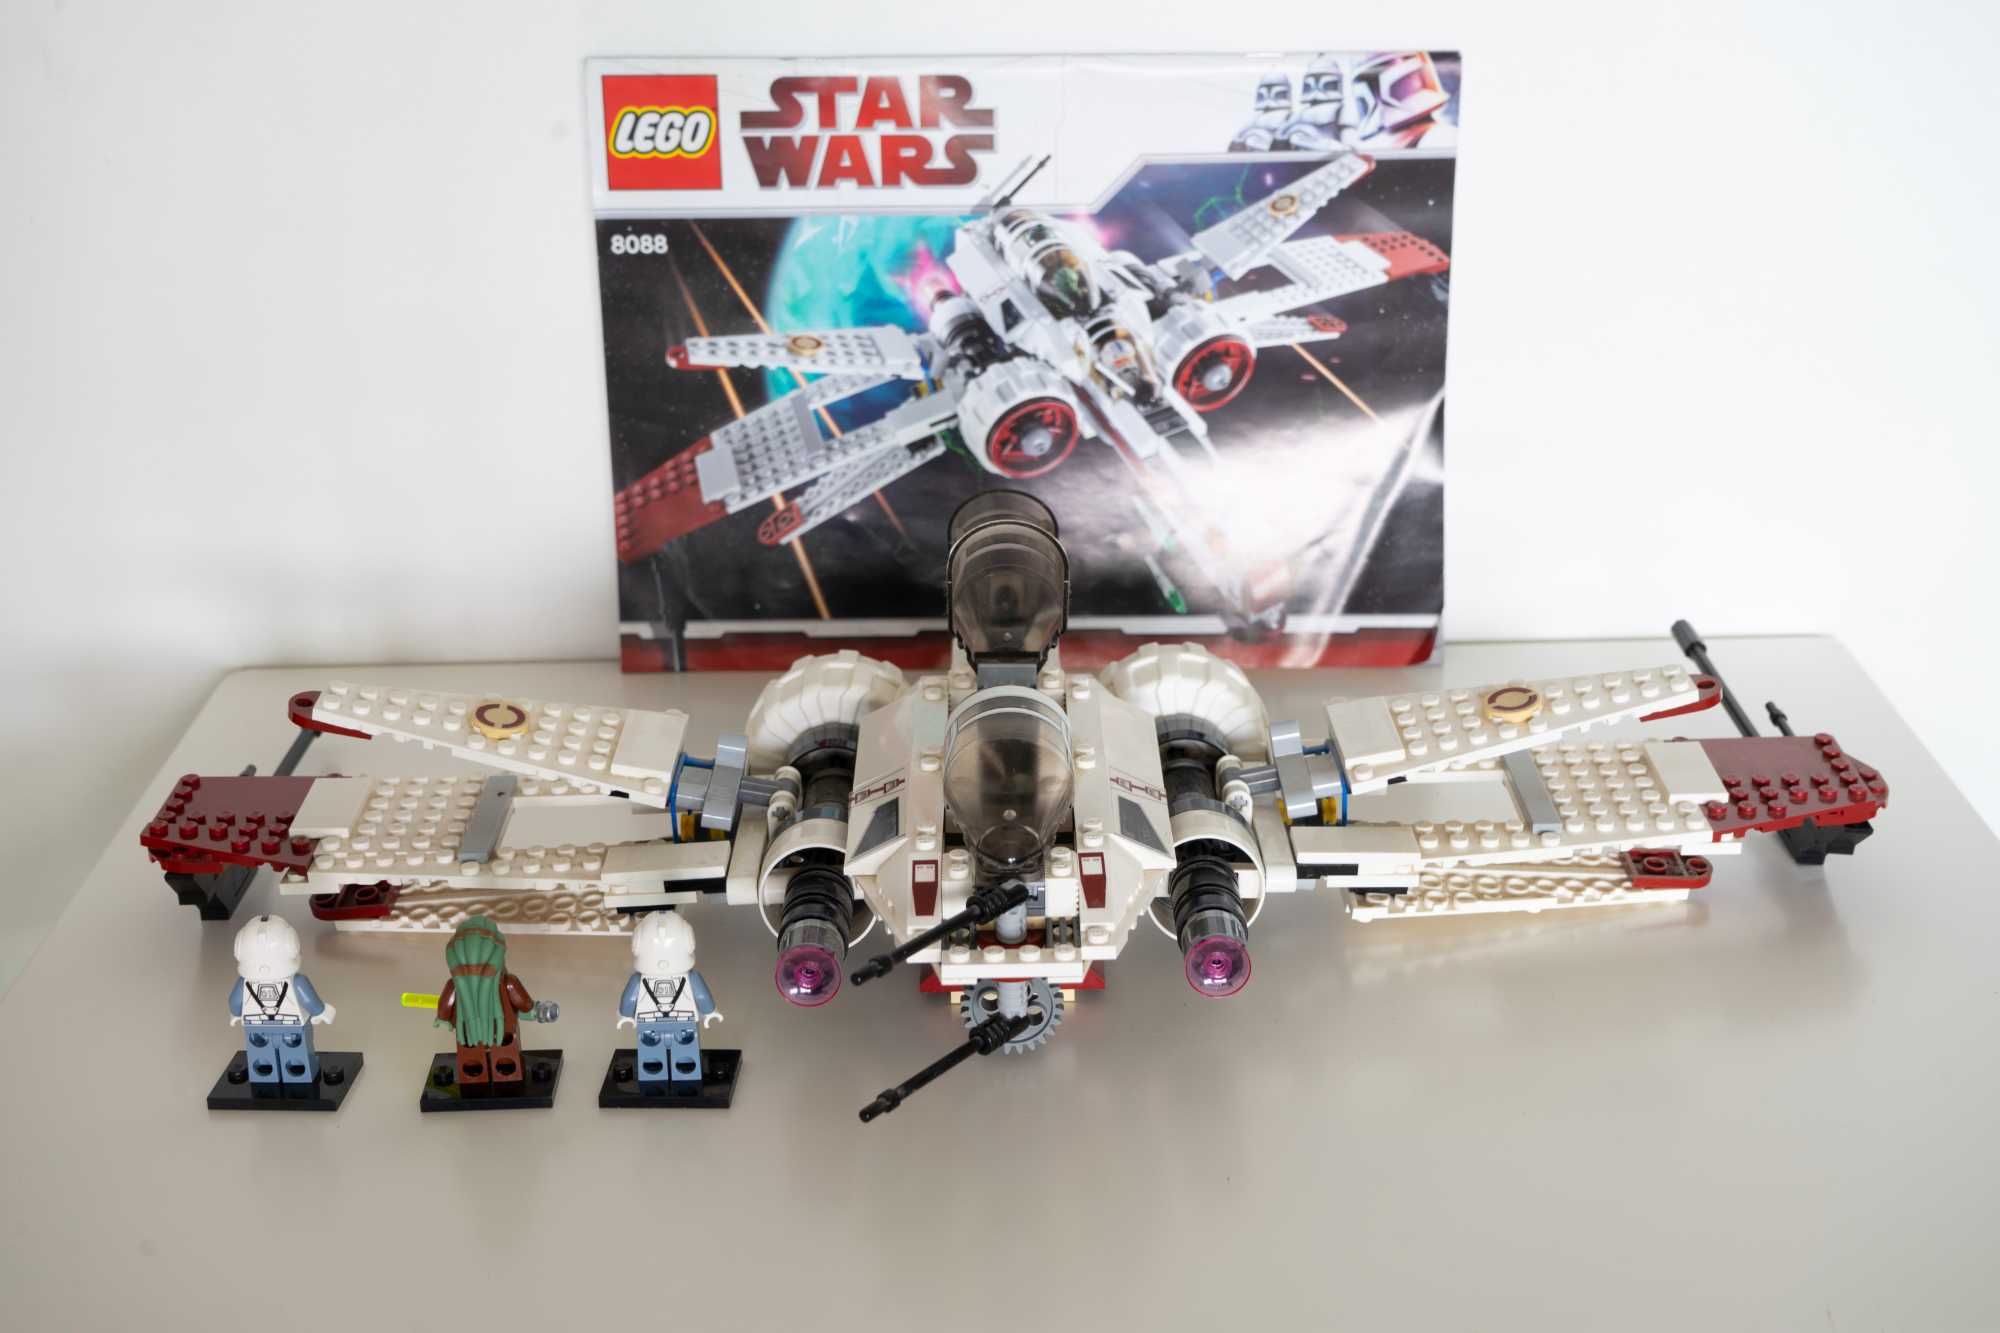 Lego Star Wars 8088 ARC-170 Starfighter 2010